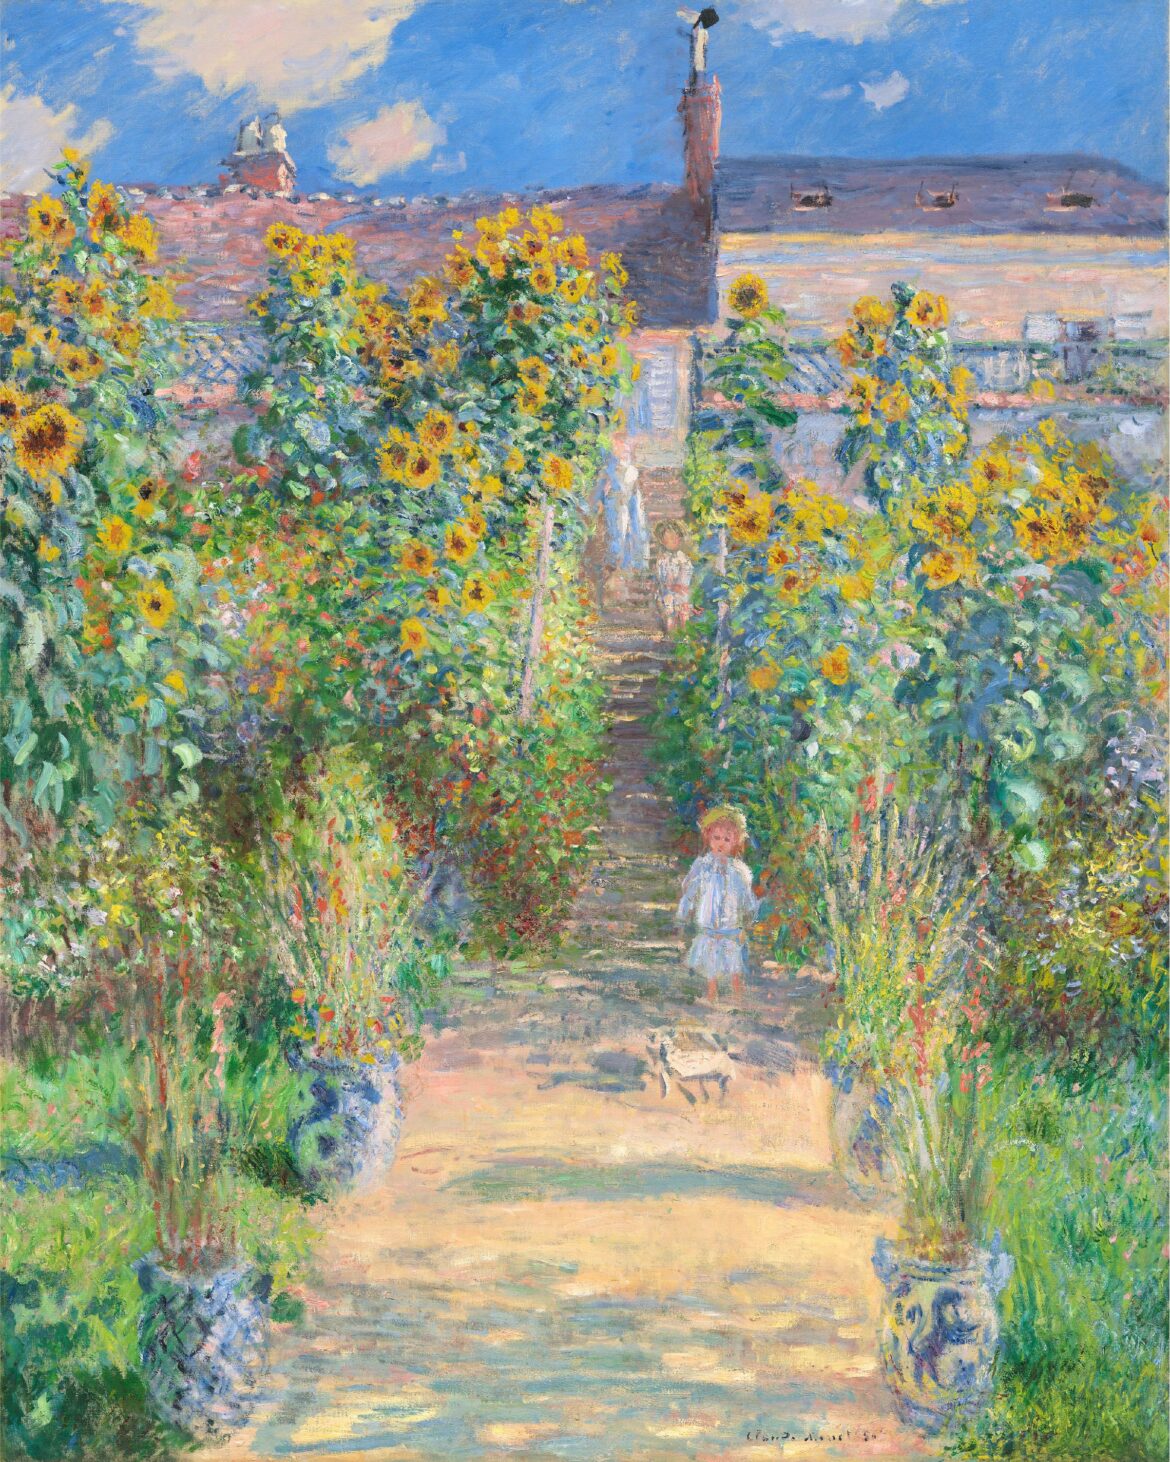 【無料壁紙】クロード・モネ「ヴェトゥイユの画家の庭 (1881)」 / Claude Monet_The Artist’s Garden at Vétheuil (1881)